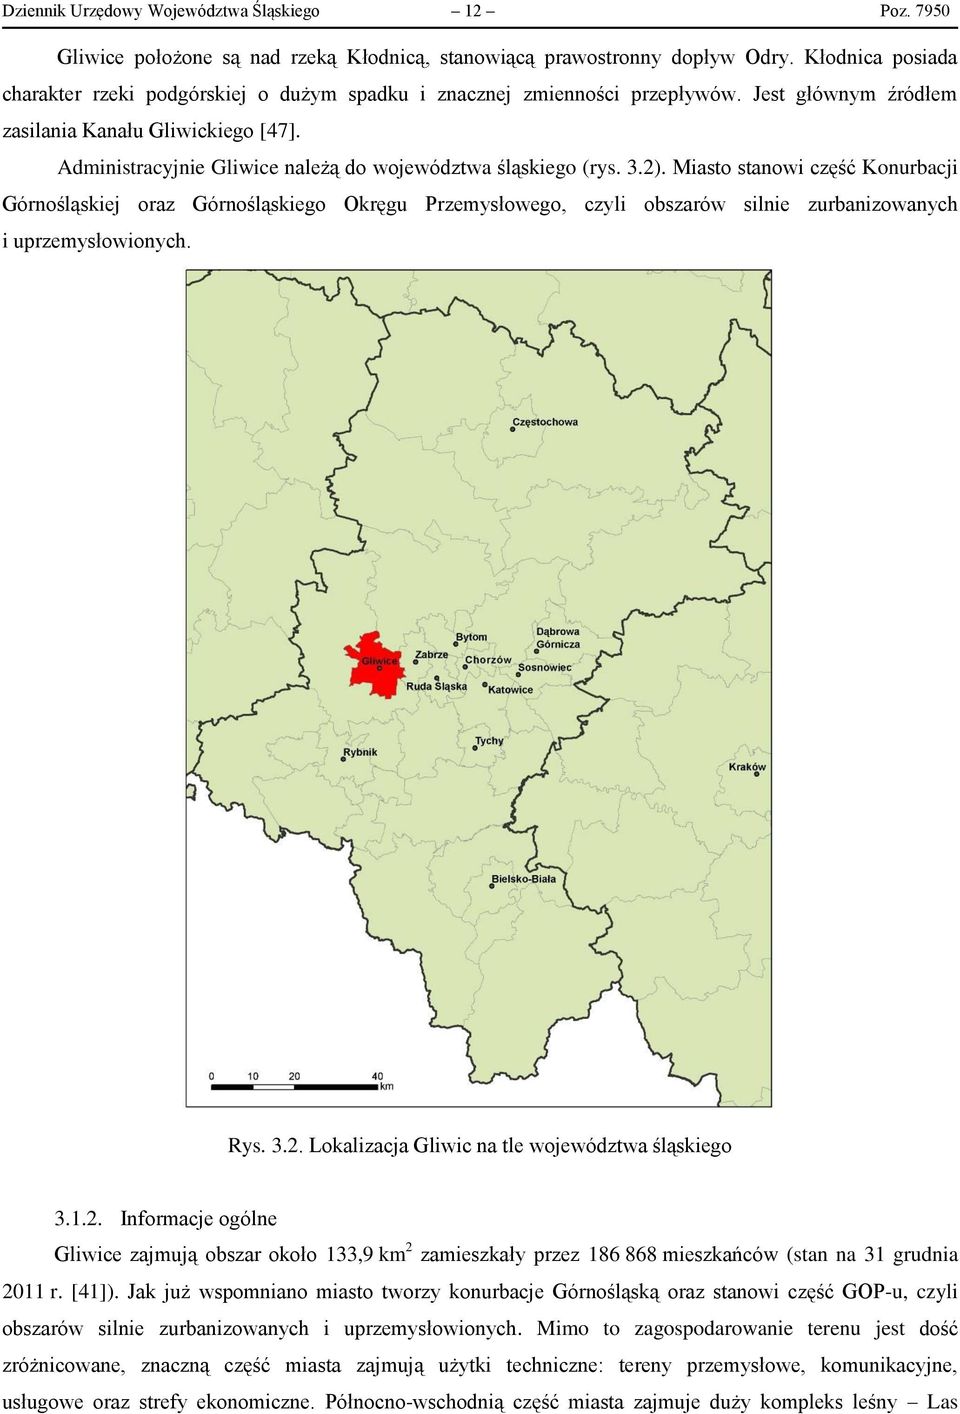 Administracyjnie Gliwice należą do województwa śląskiego (rys. 3.2).